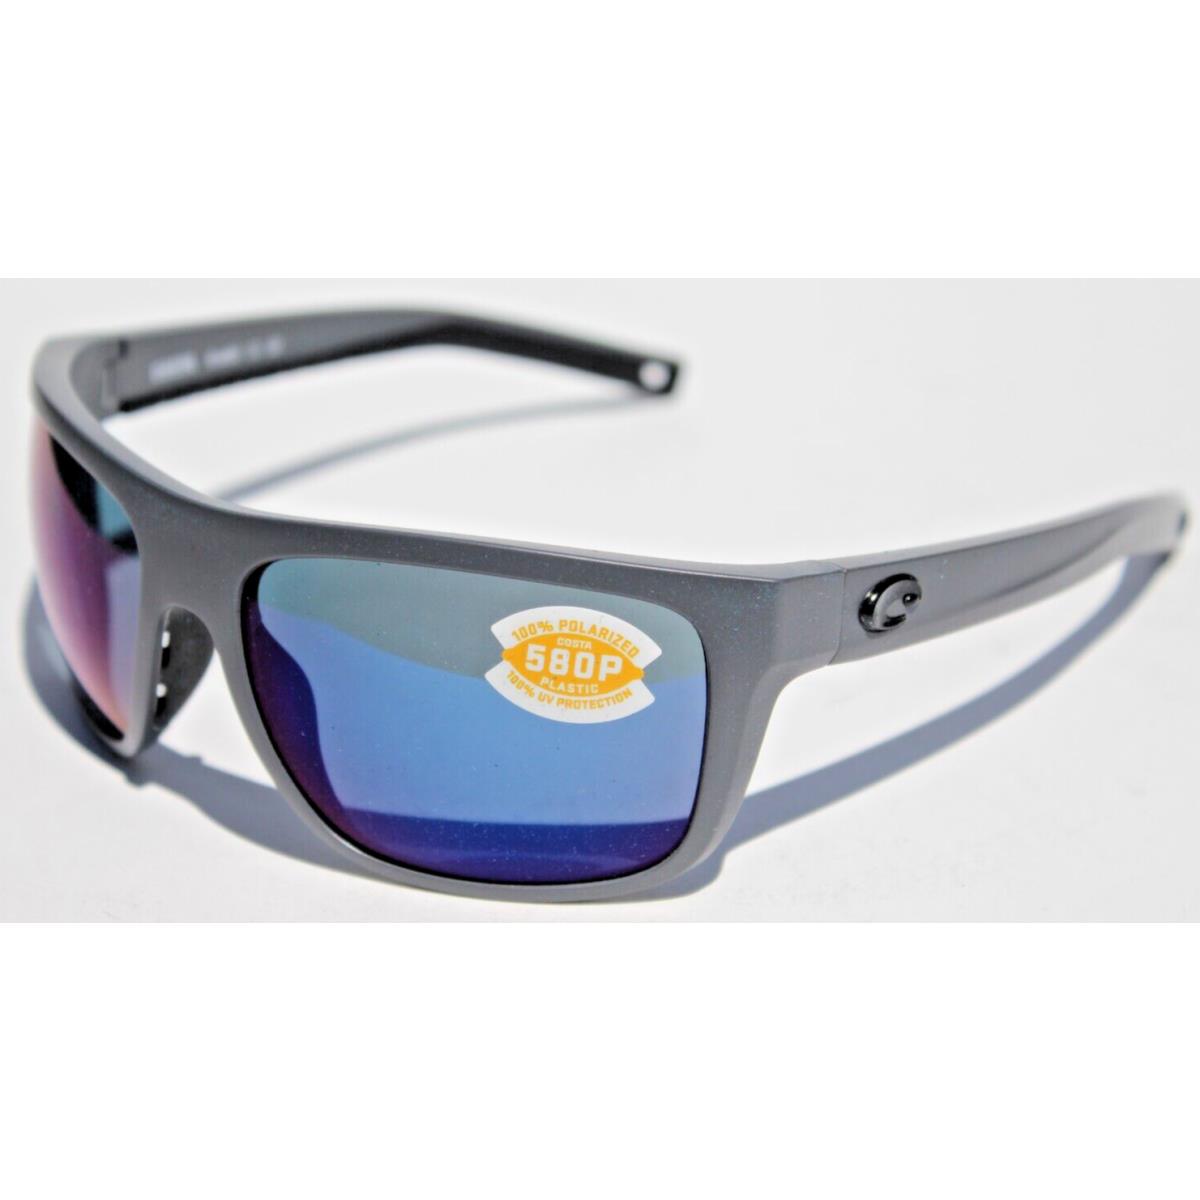 Costa Del Mar sunglasses Broadbill - Gray Frame, Blue Lens 0